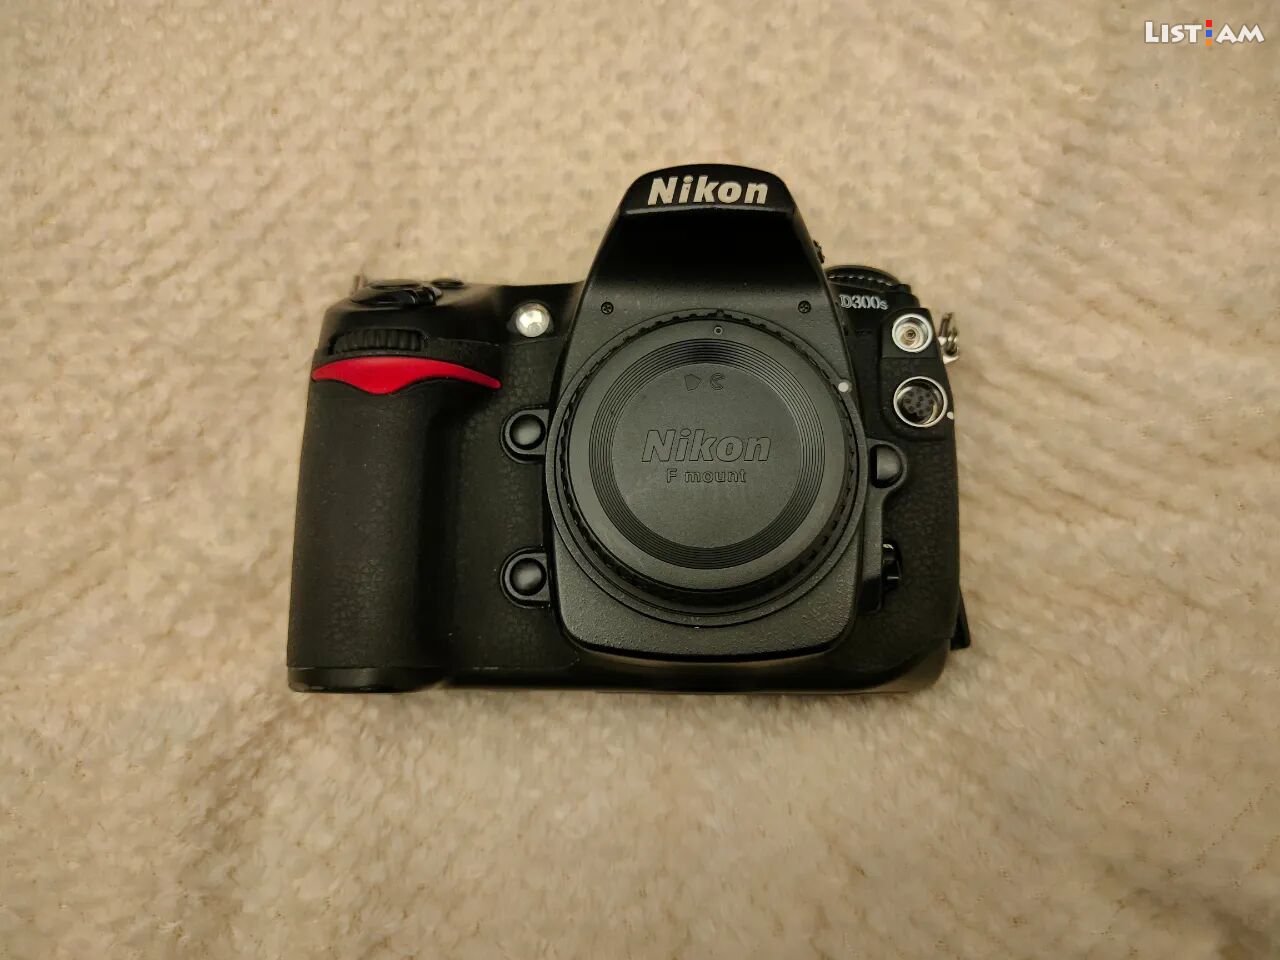 Nikon D300s camera